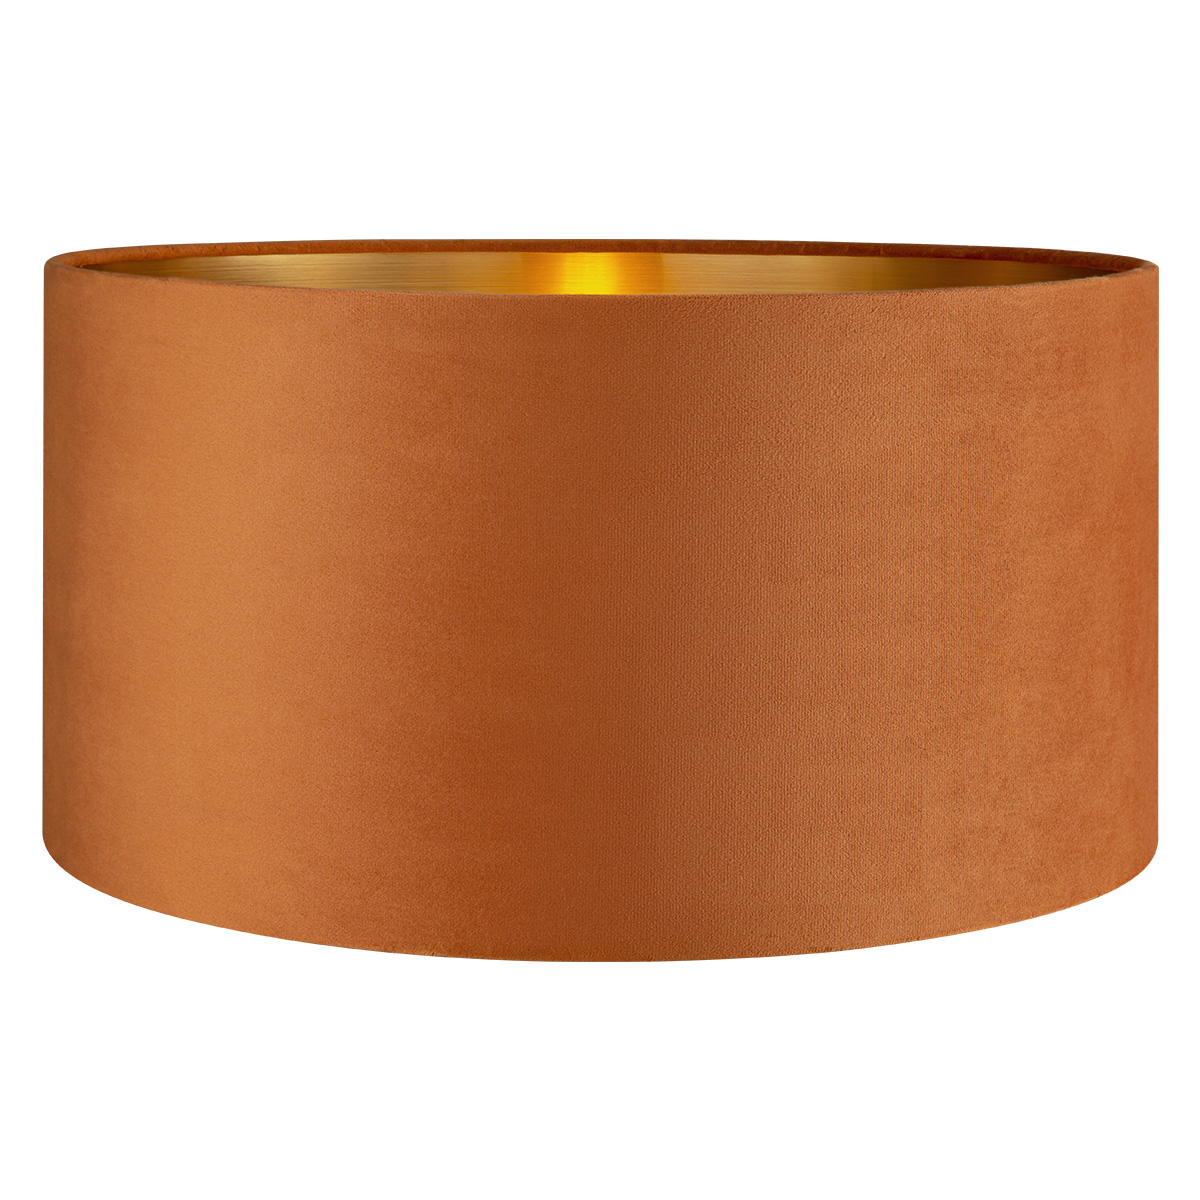 Tangla lighting - TLS7564-45OG - Lampshade - velvet - orange - diameter 45cm - E27